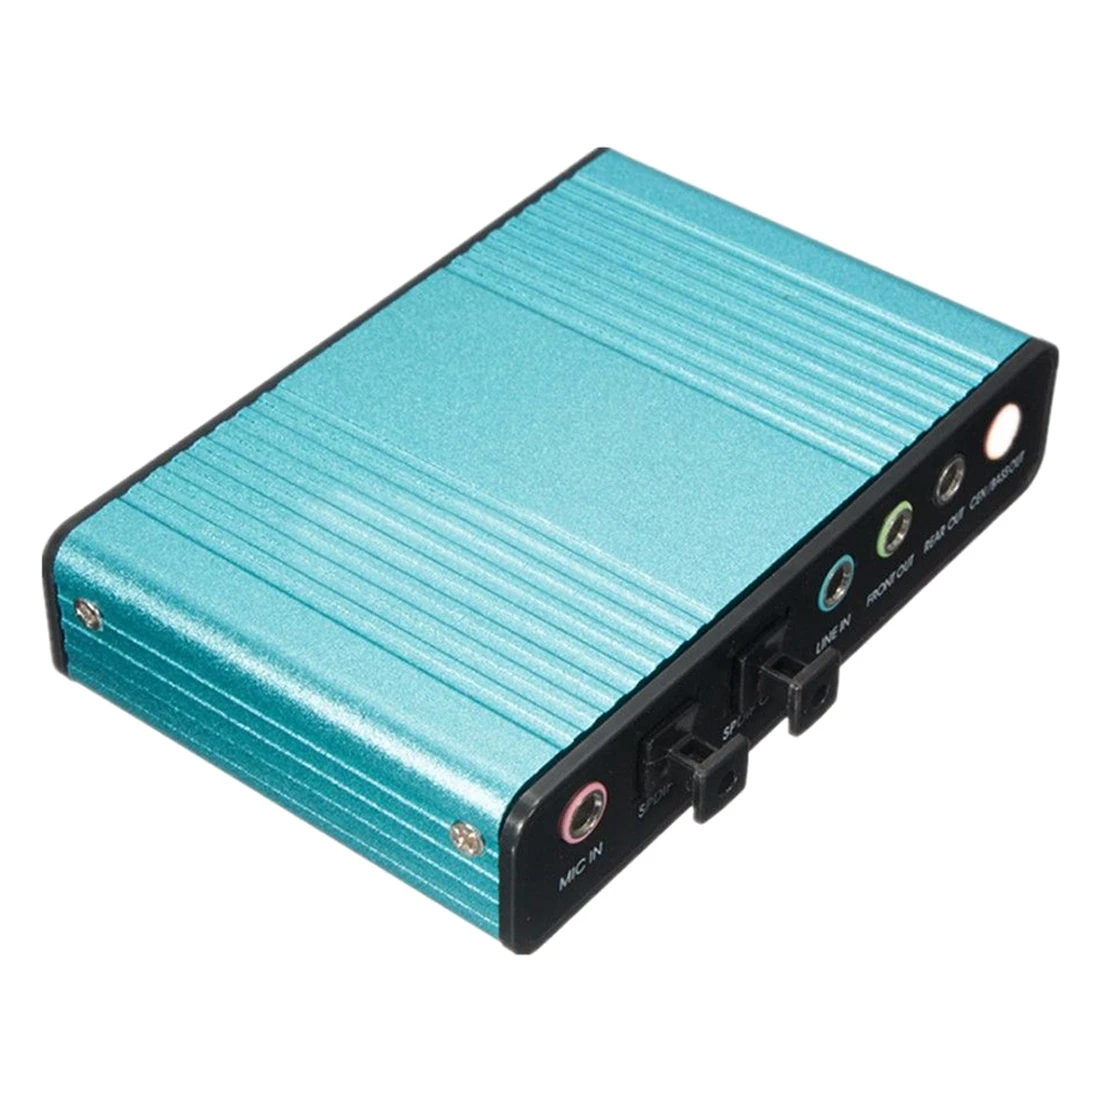 Внешняя звуковая карта USB 6 Channel 5,1 Audio S/PDIF оптическая Звуковая карта для ПК светло-голубой